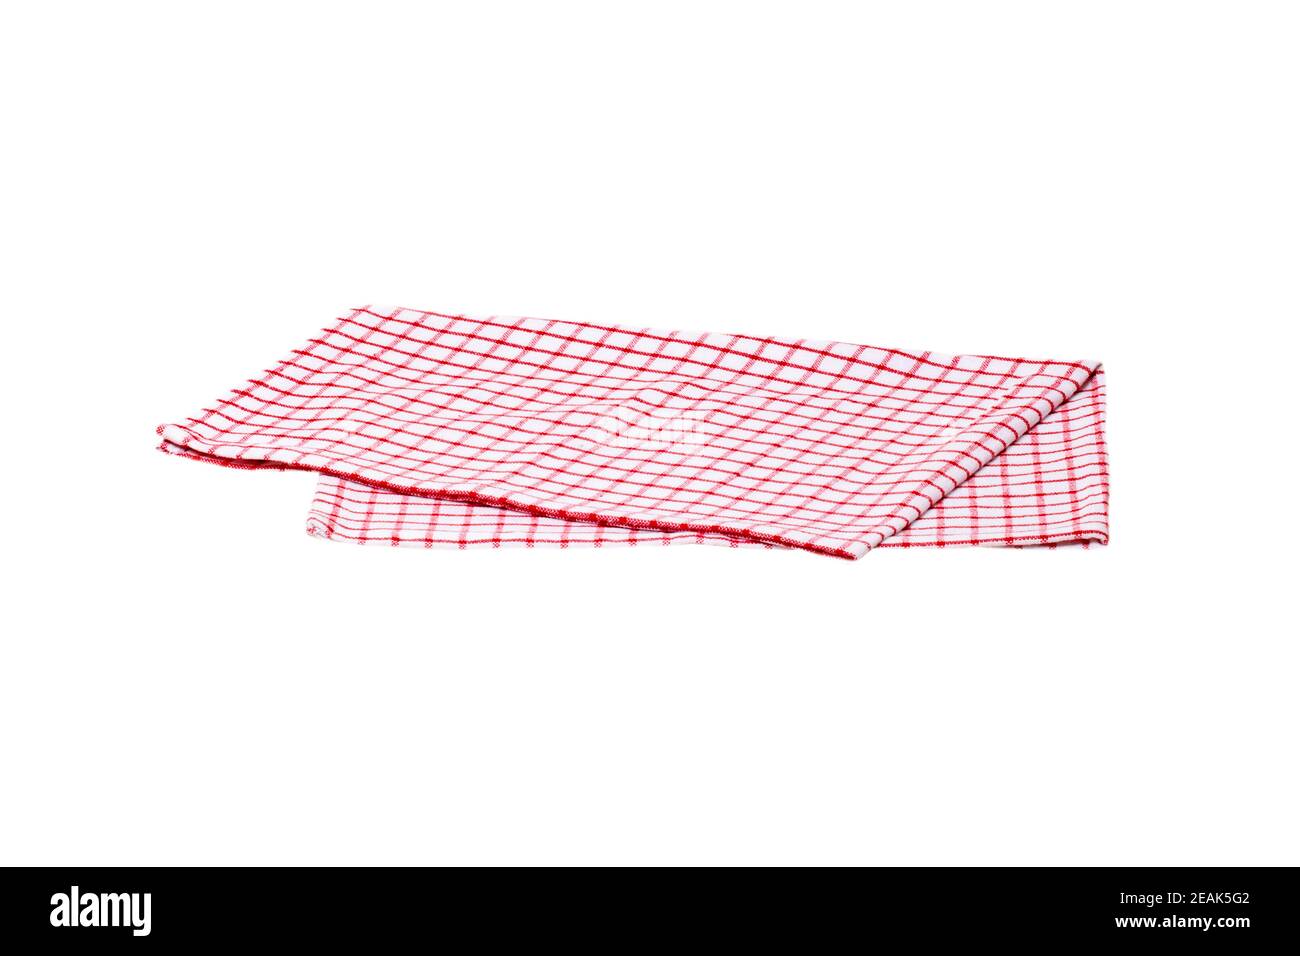 Nahaufnahme eines rot-weiß karierten Küchentuch oder Serviette auf weißem Hintergrund isoliert. Küchenzubehör. Makro-Photgraph. Stockfoto